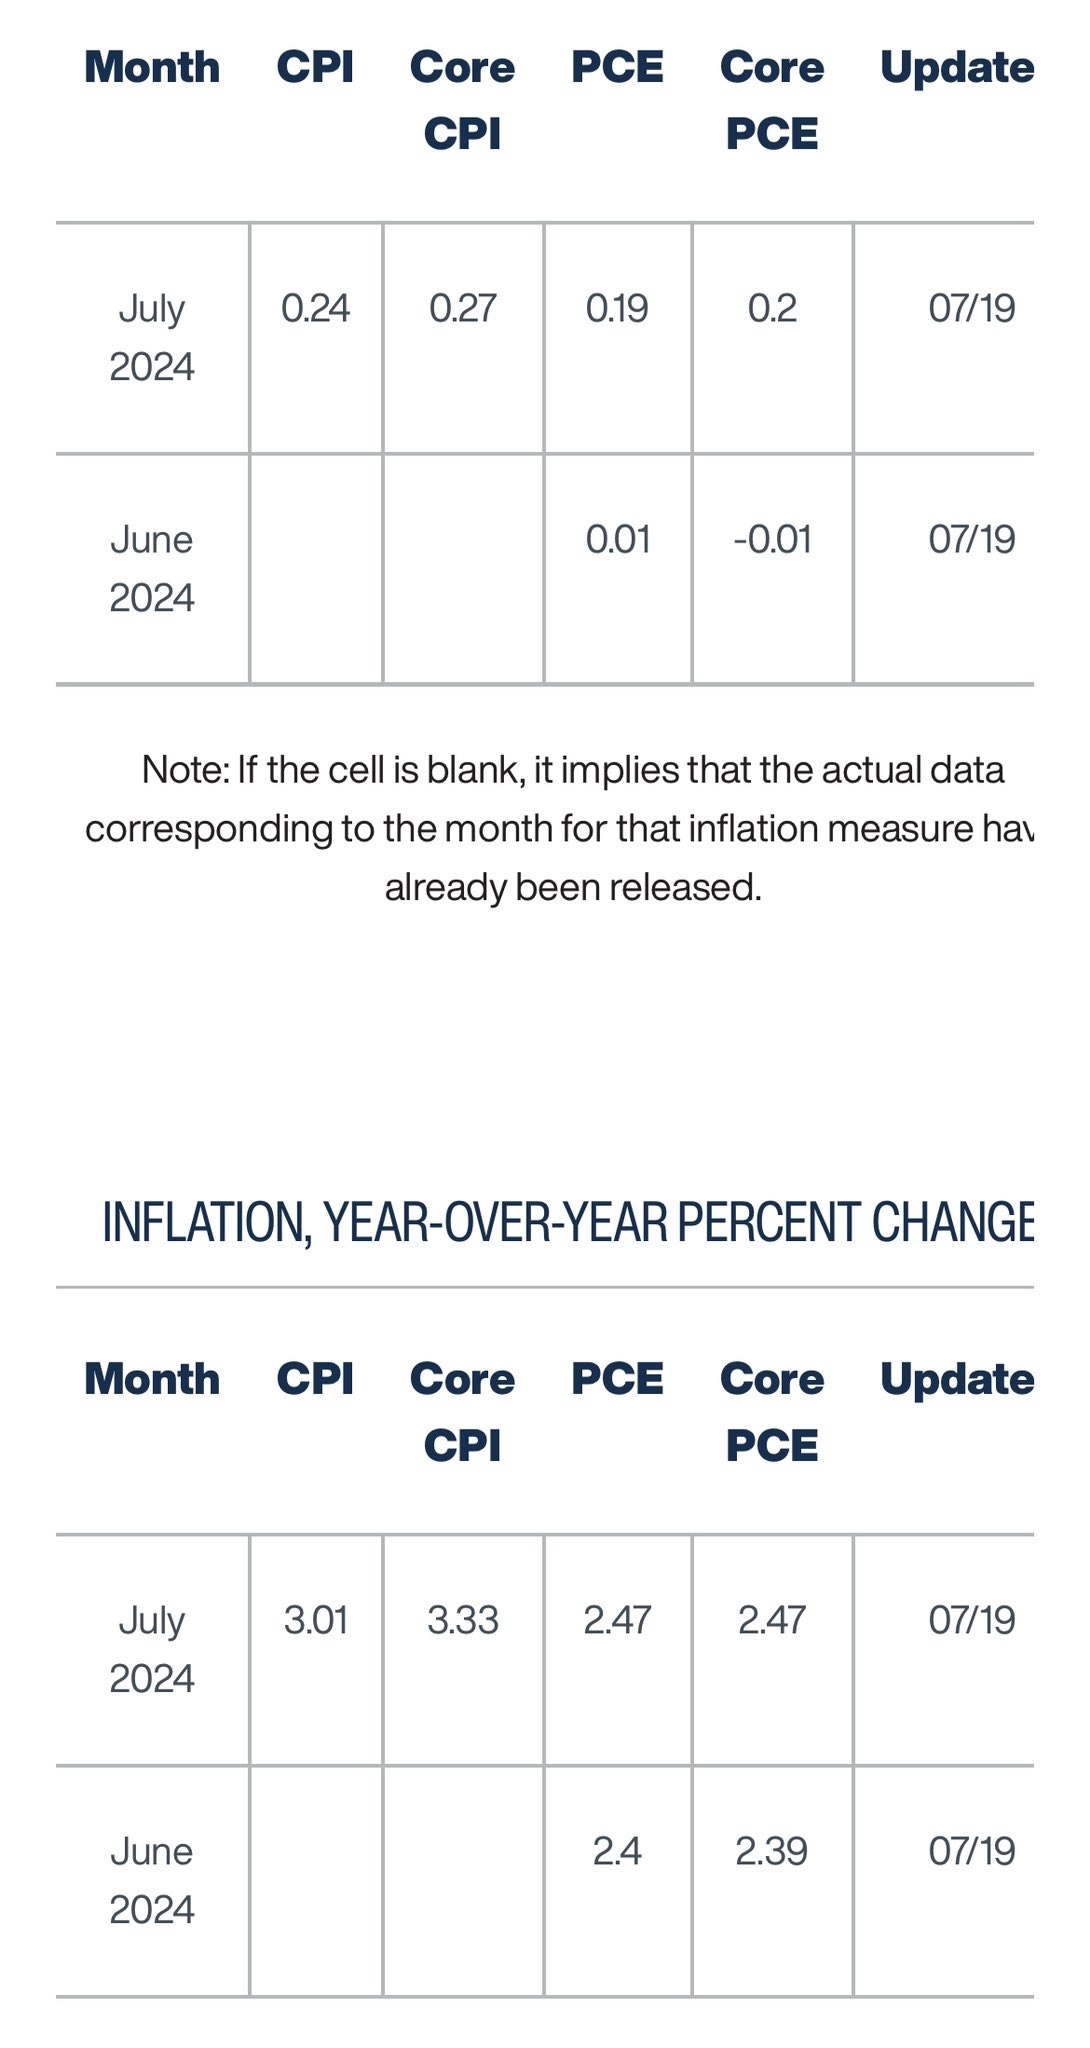 クリーヴランド連銀の即時CPIでは、6月コアPCEはとうとう前月比で🔺0.01%とマイ転してる